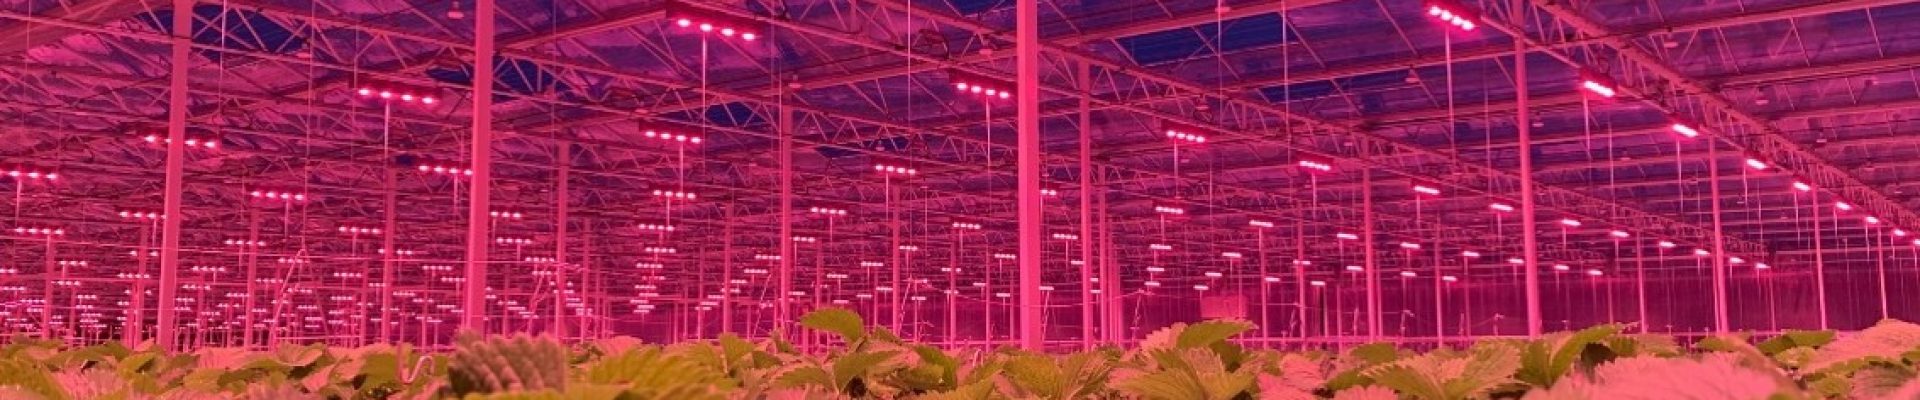 üvegház, kertészet, LED világítás pályázat